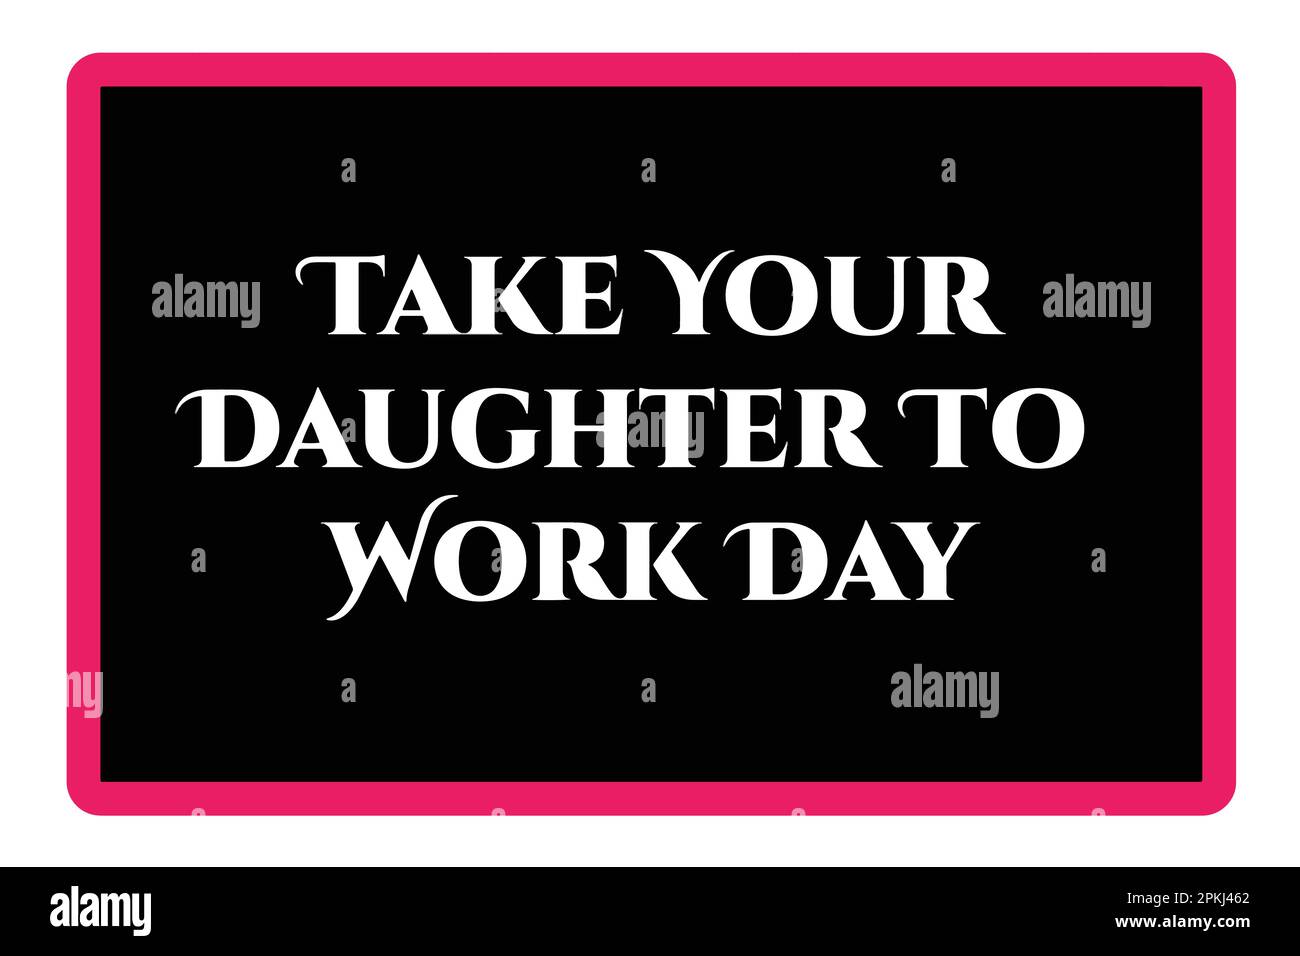 Bring Deine Tochter Zur Arbeit. Motivierende und inspirierende Zitate. Vorlage für Hintergrund, Banner, Karte, Poster mit Texteindruck. Vektor Stock Vektor